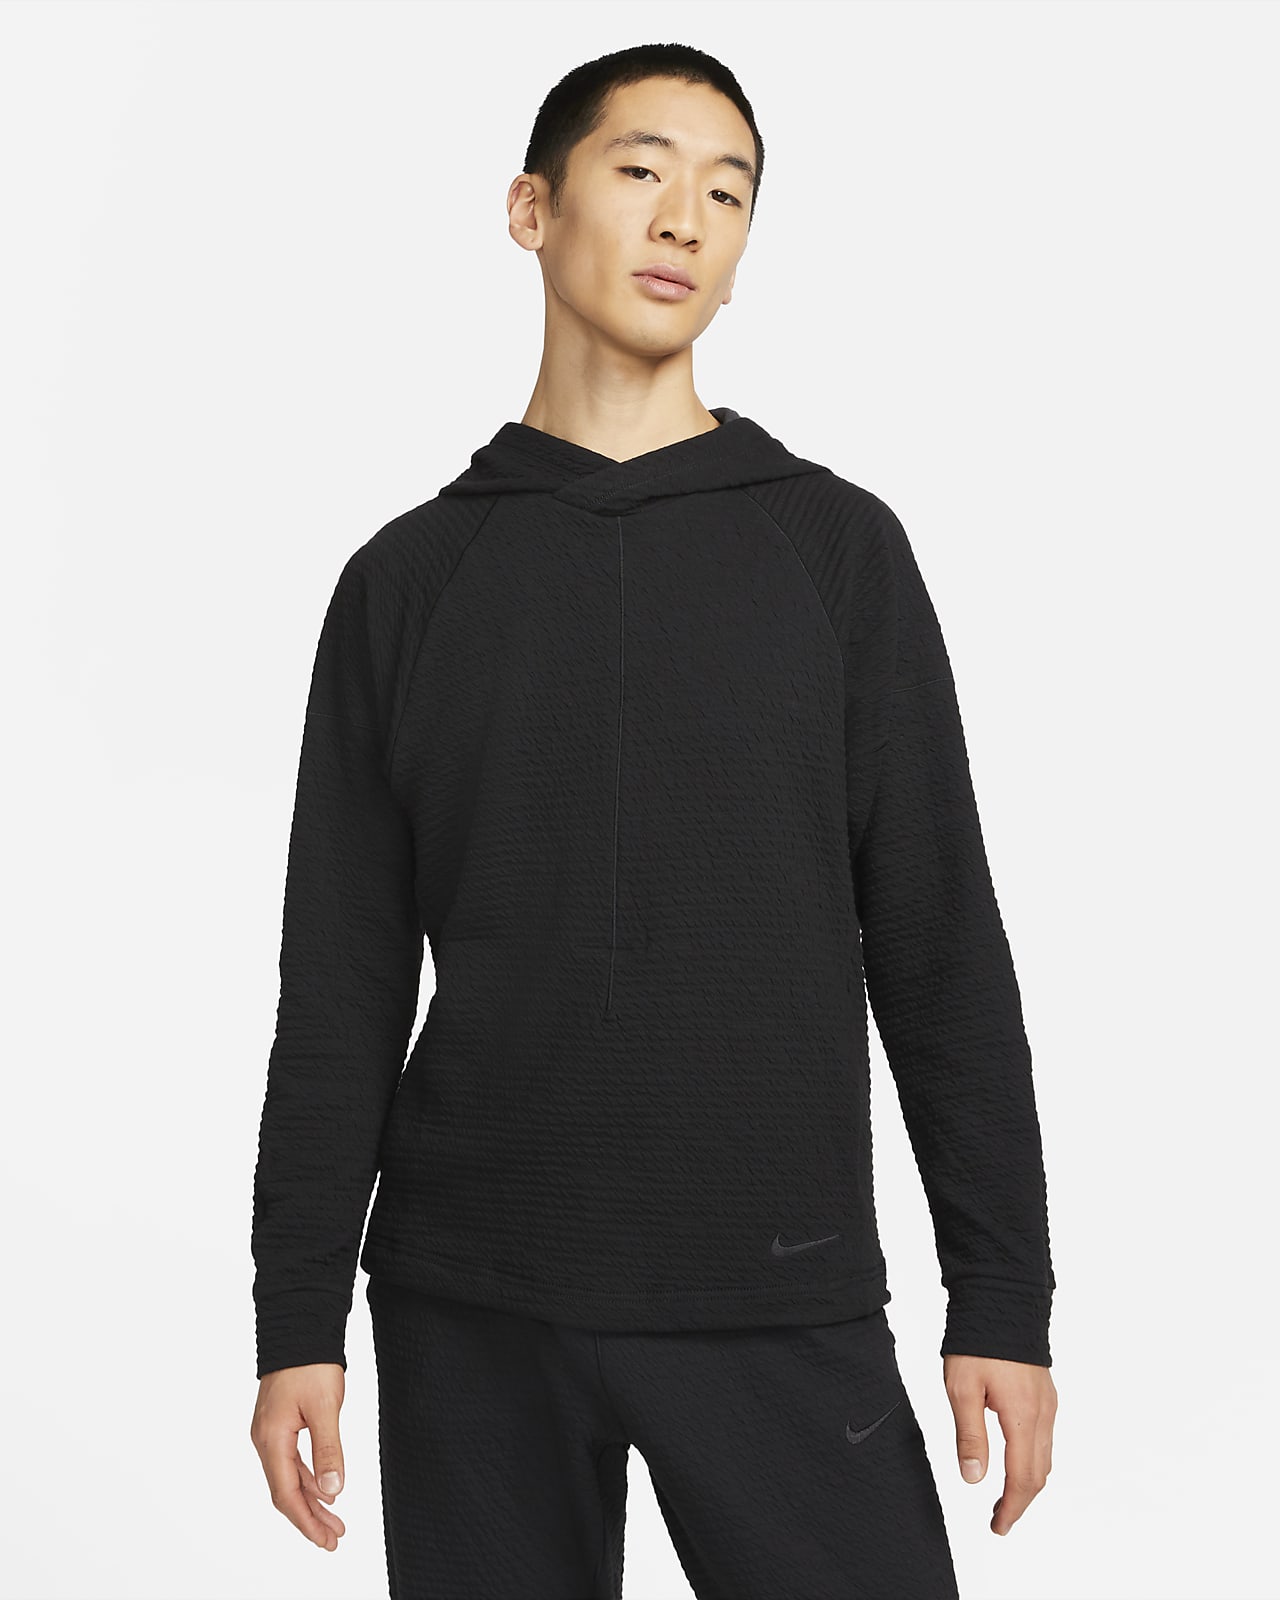 Nike Yoga Dri-FIT Men's Pullover Hoodie